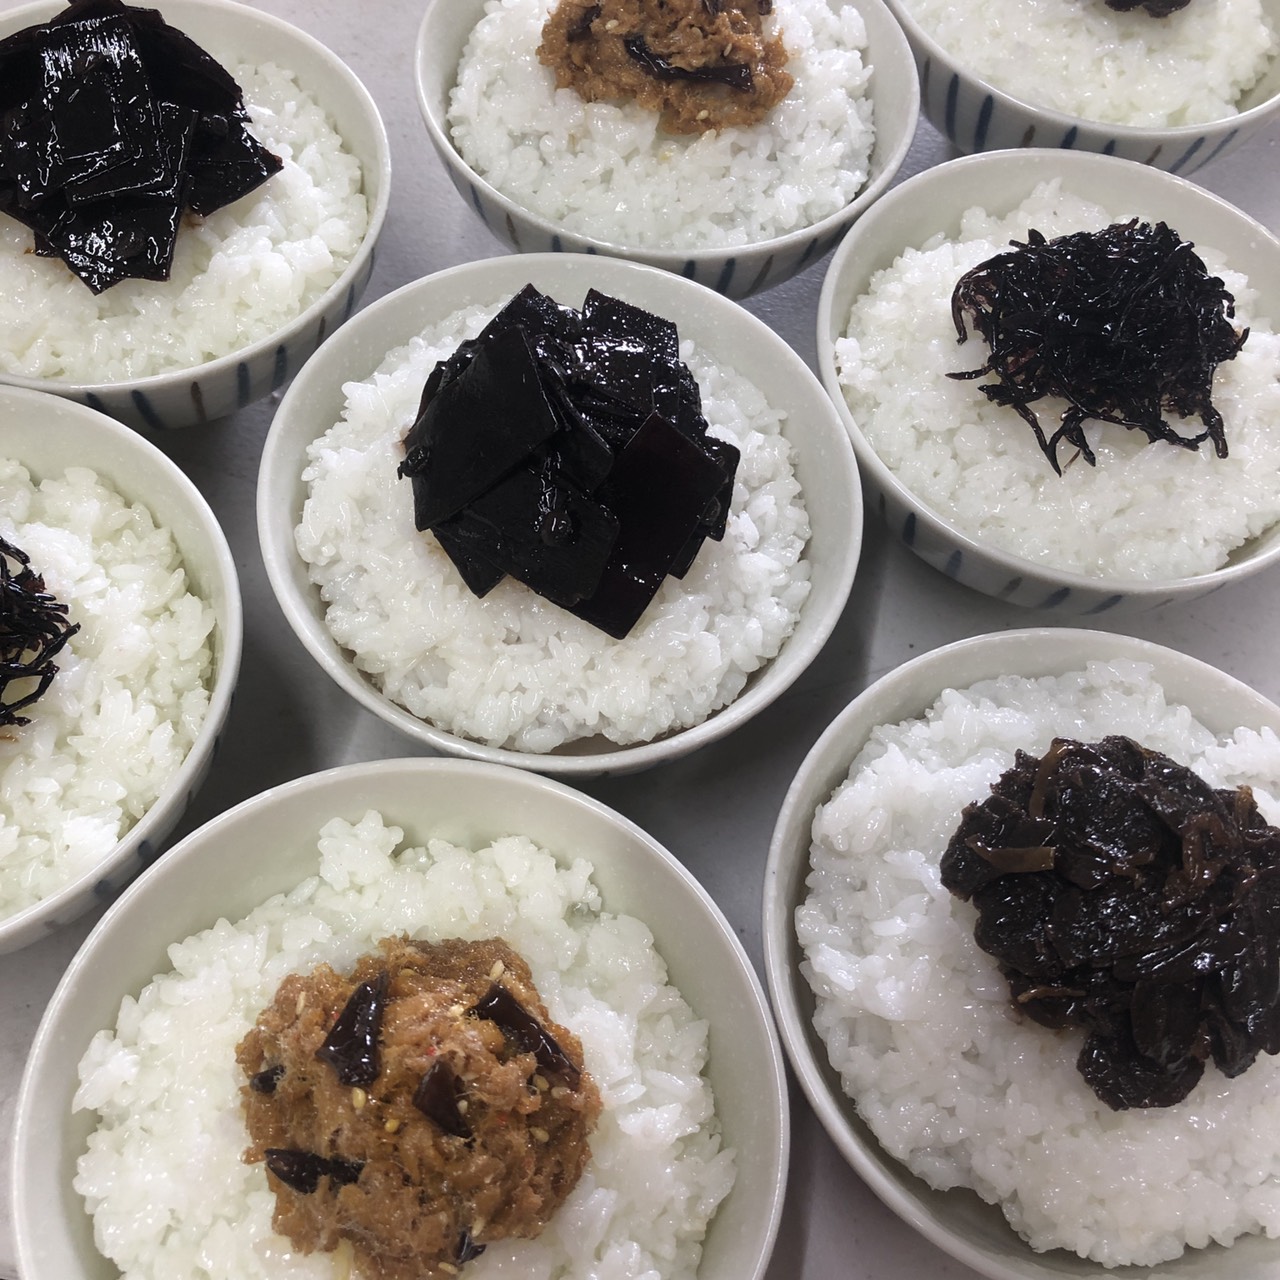 三重県桑名市の老舗料亭 丁子屋さんの佃煮4種を納品しました。